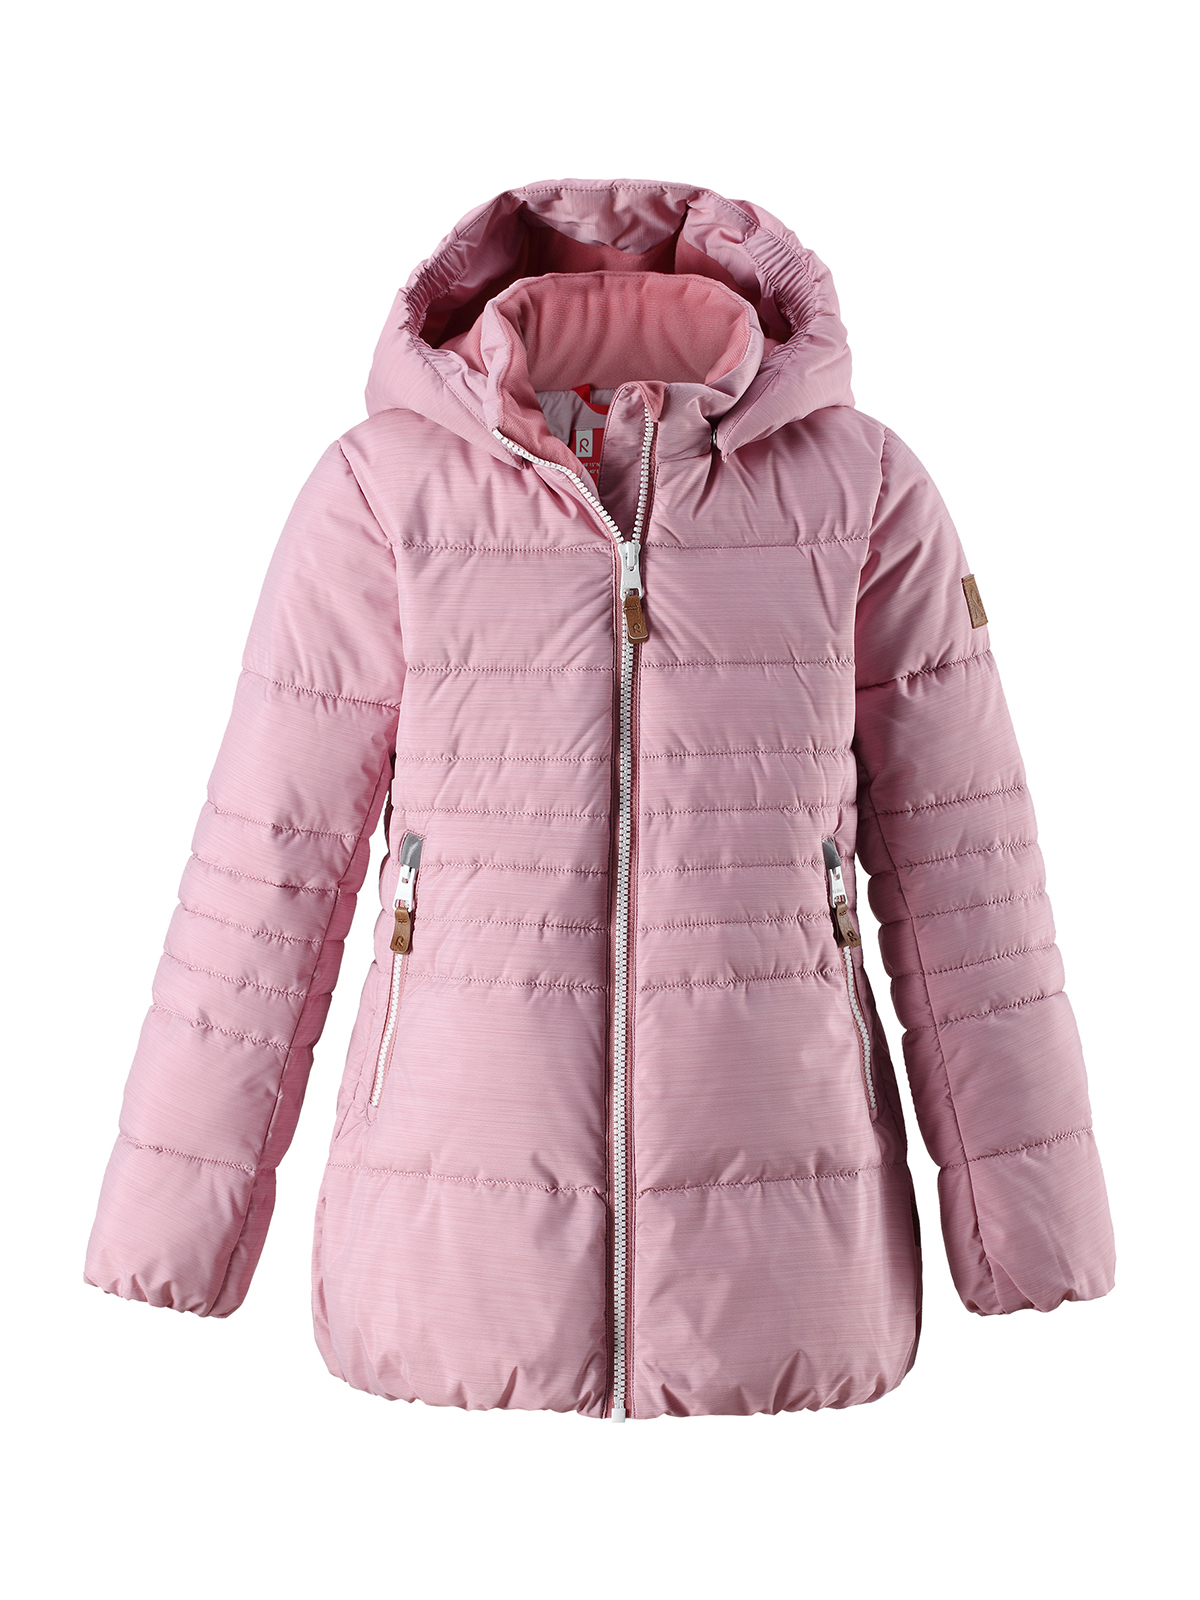 Куртка Reima нежно-розовая Liisa